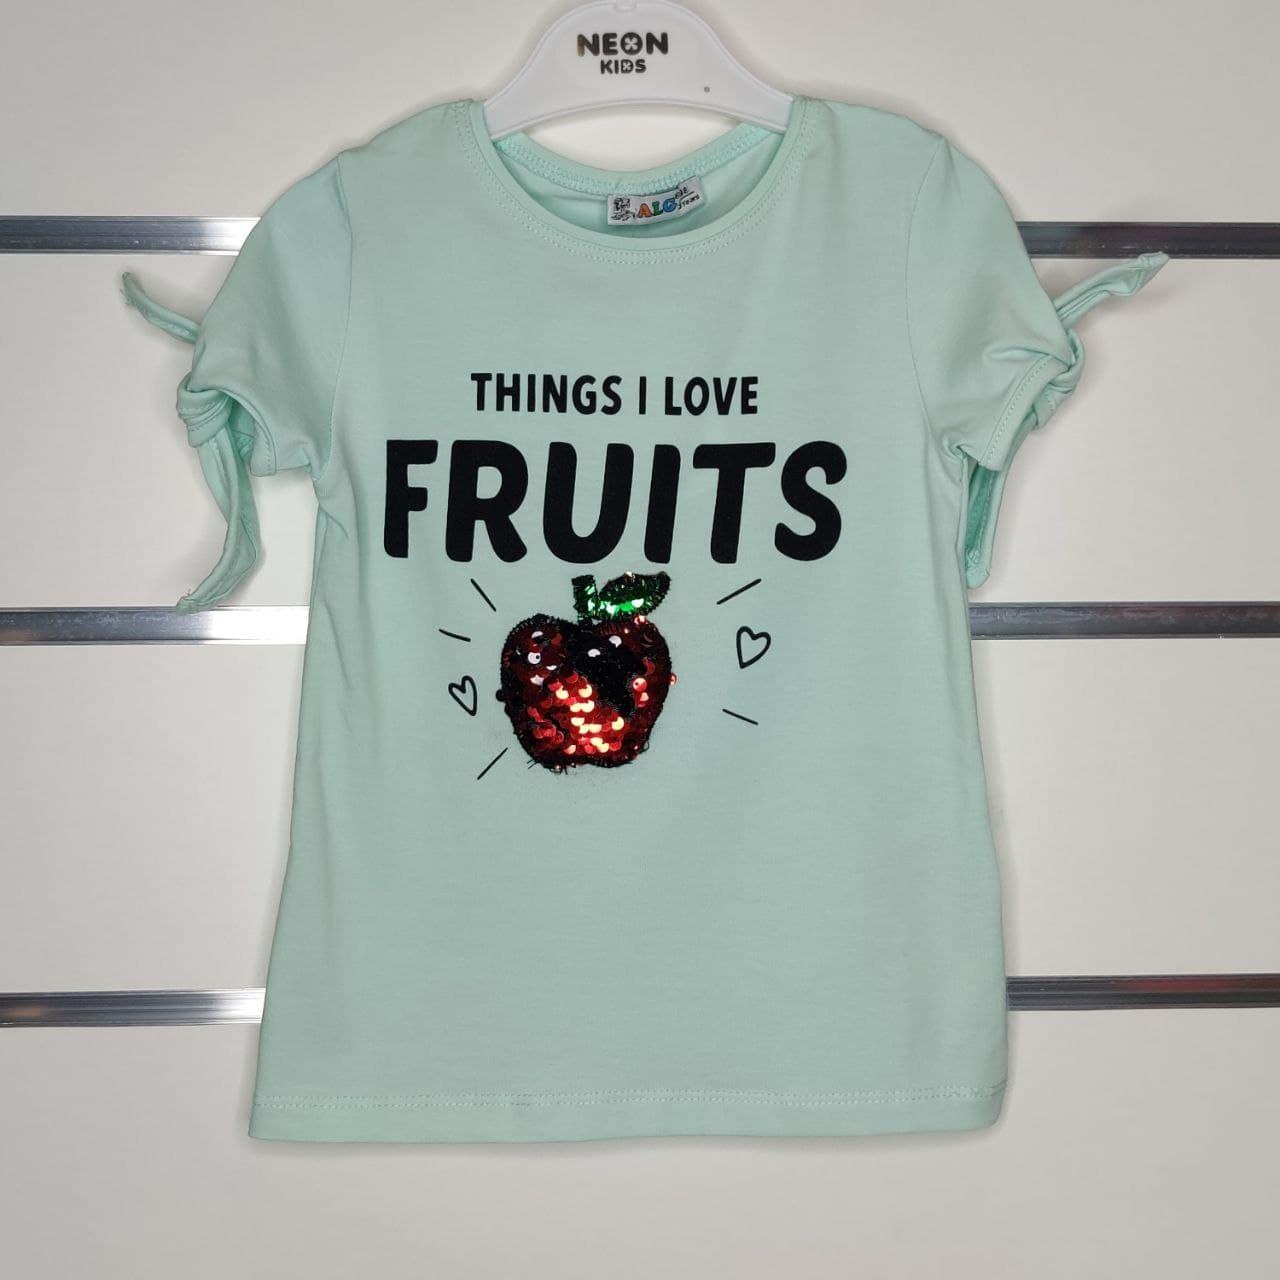 

Трикотажная футболка с пайетками Яблоко для девочки бирюзового цвета 98 см, 104 см, 116 см, 122 см, Бирюзовый